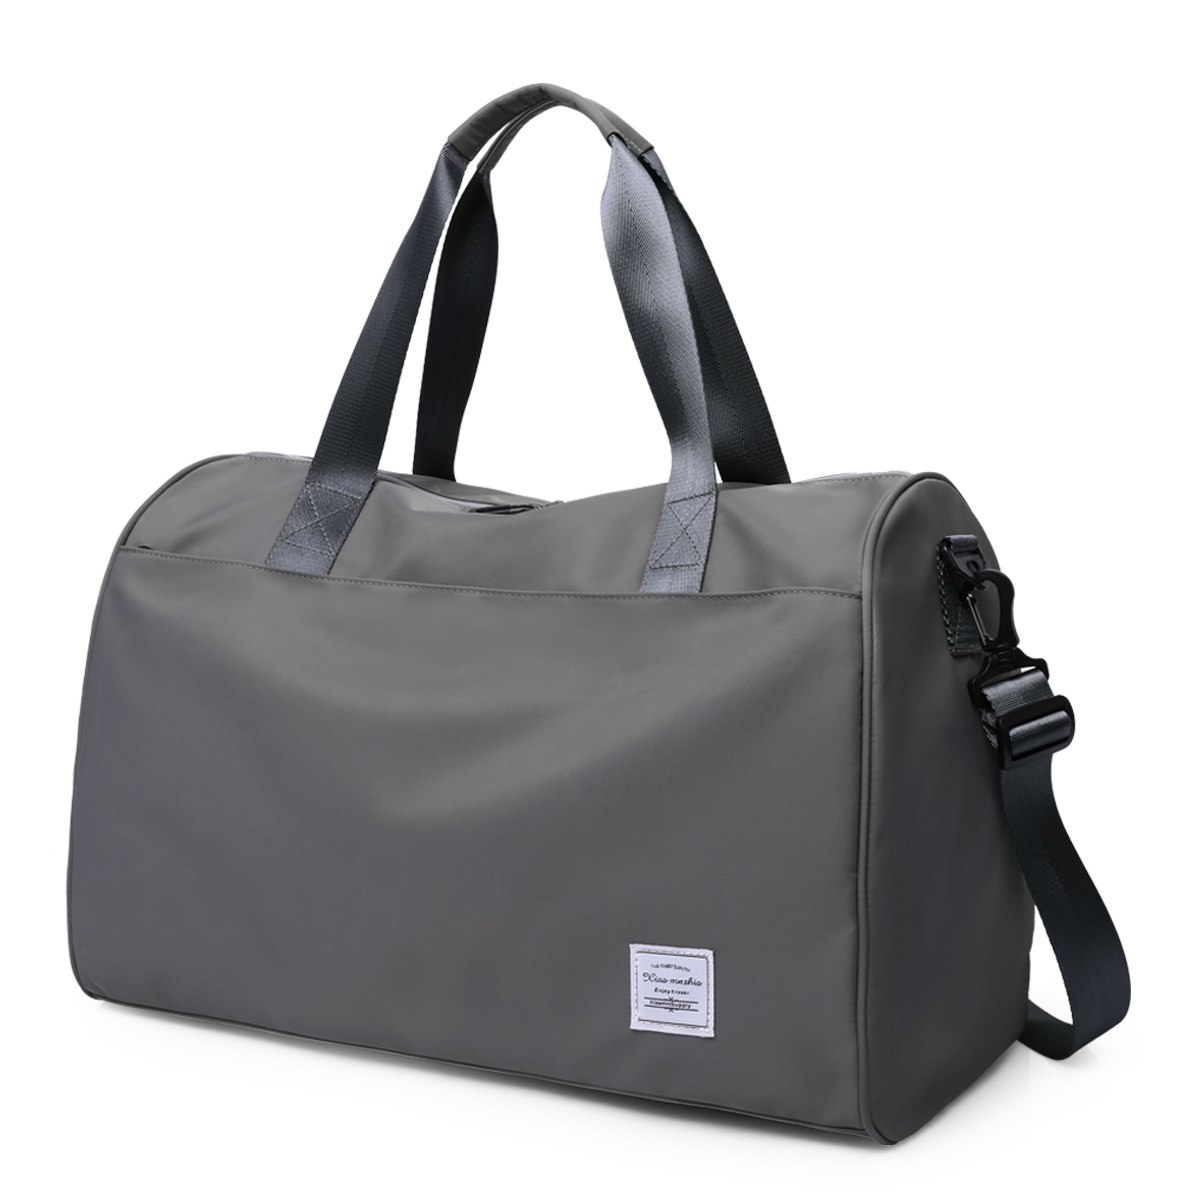 男士大容量手提旅行包袋出差行李包电脑包套拉杆包干分离健身包女